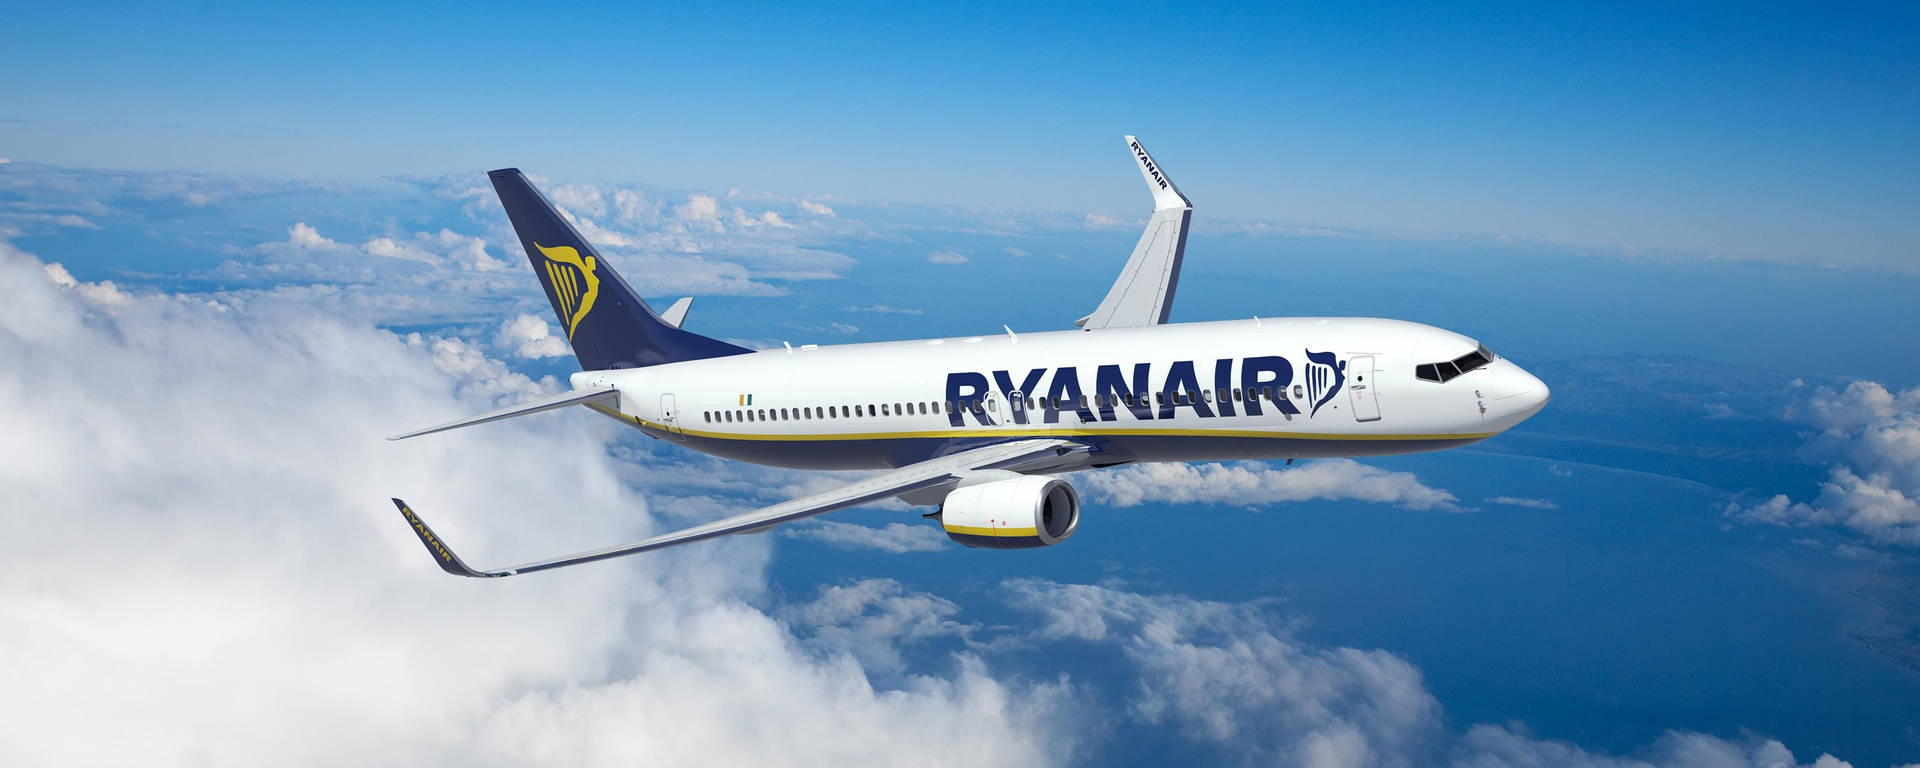 Aviónde Ryanair En El Cielo Fondo de pantalla